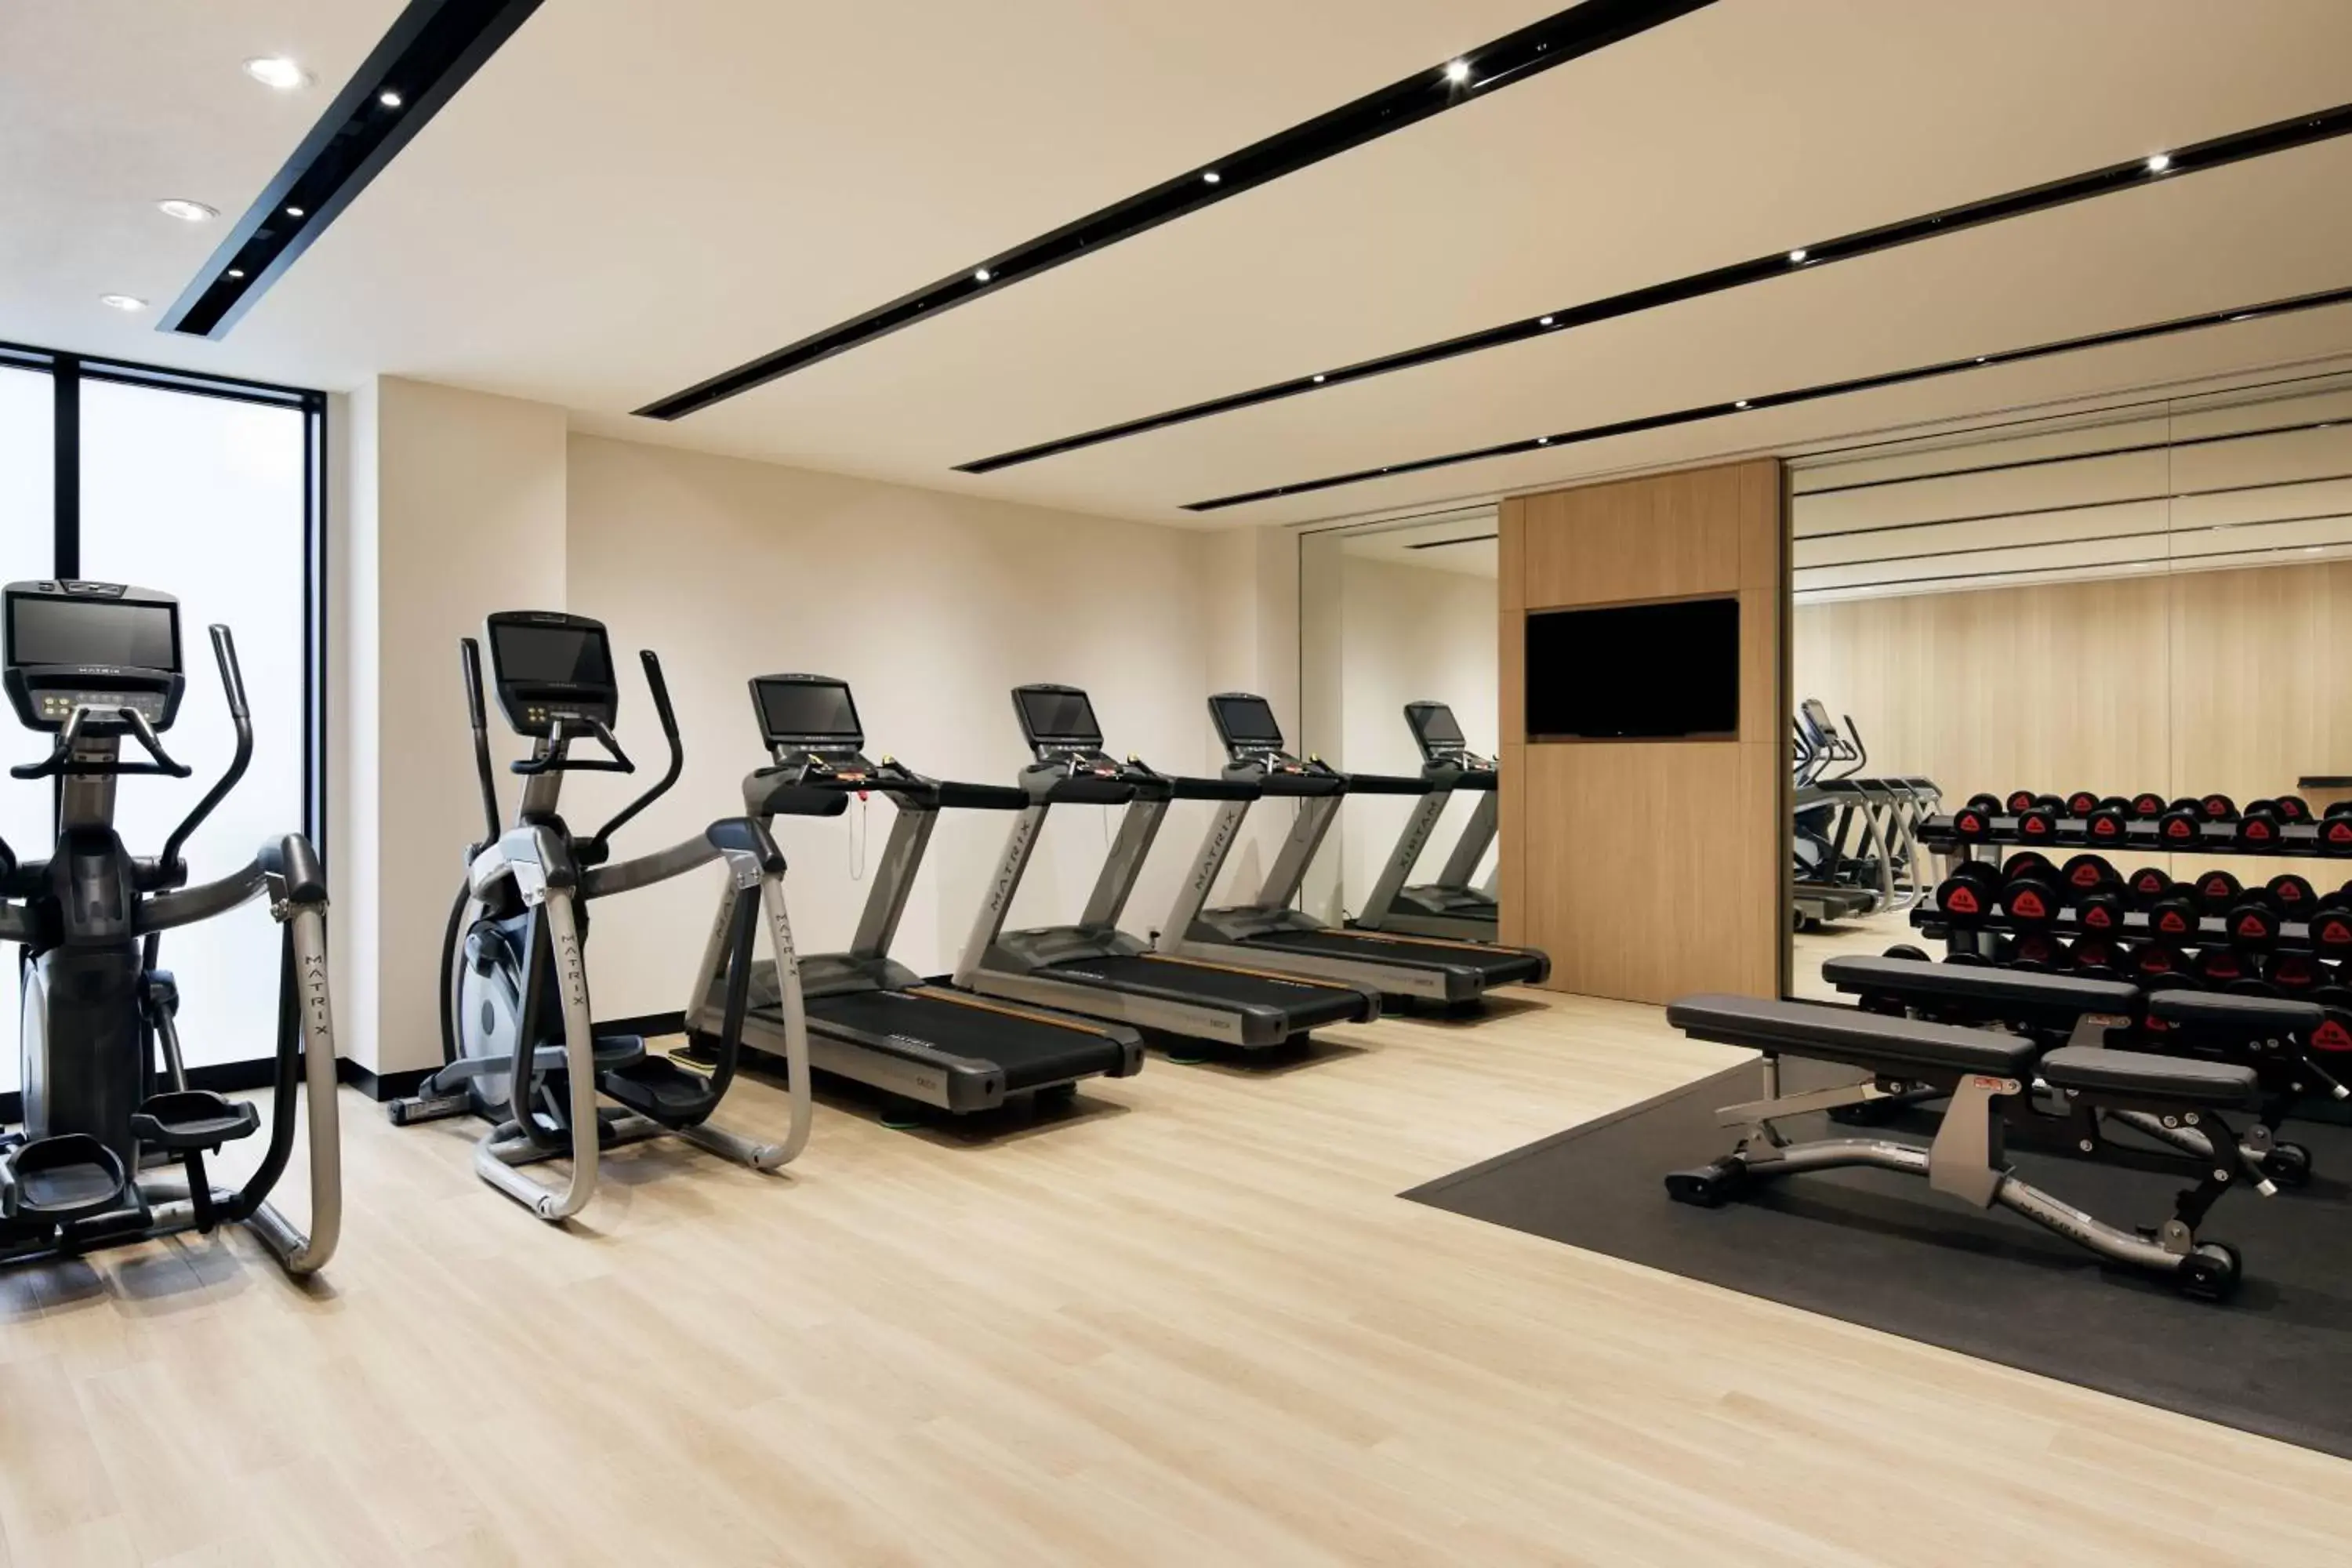 Fitness centre/facilities, Fitness Center/Facilities in Fairfield by Marriott Osaka Namba